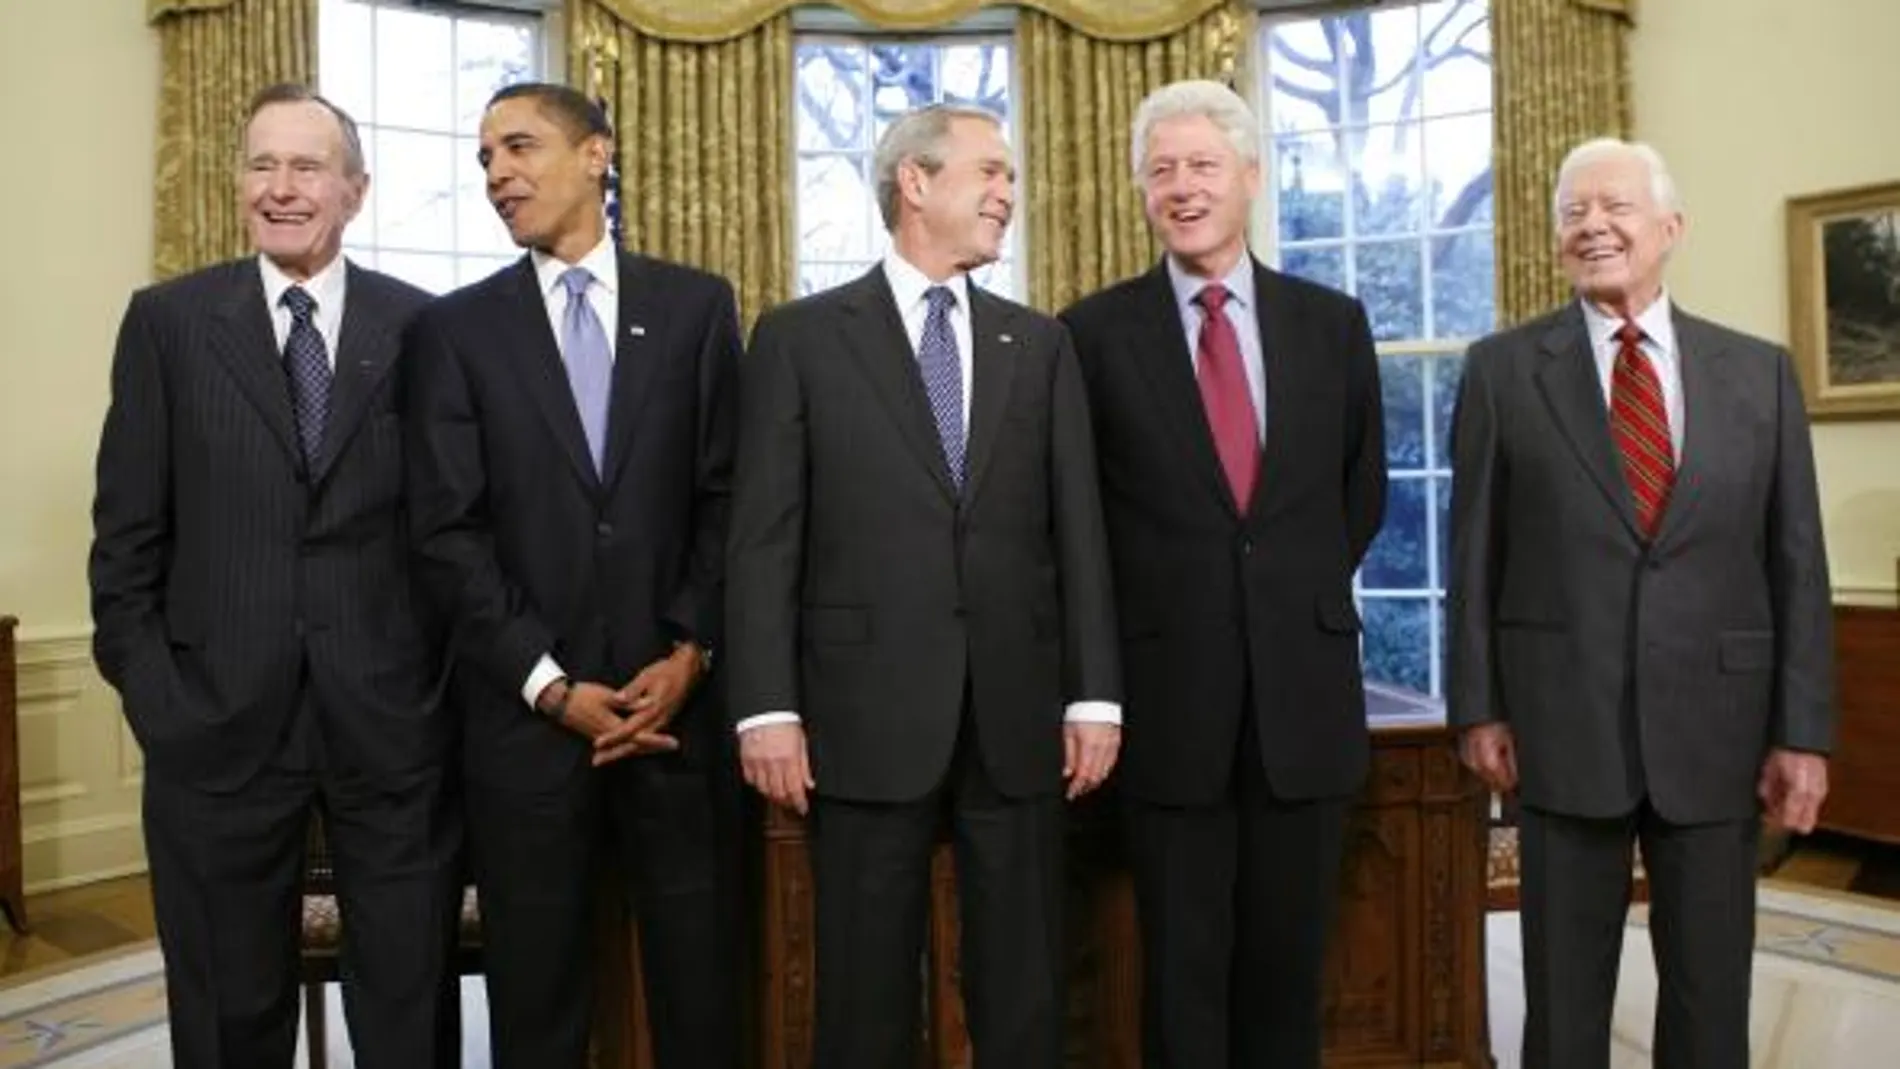 George Bush (padre), Barack Obama, el presidente Bush, Bill Clinton y Jimmy Carter